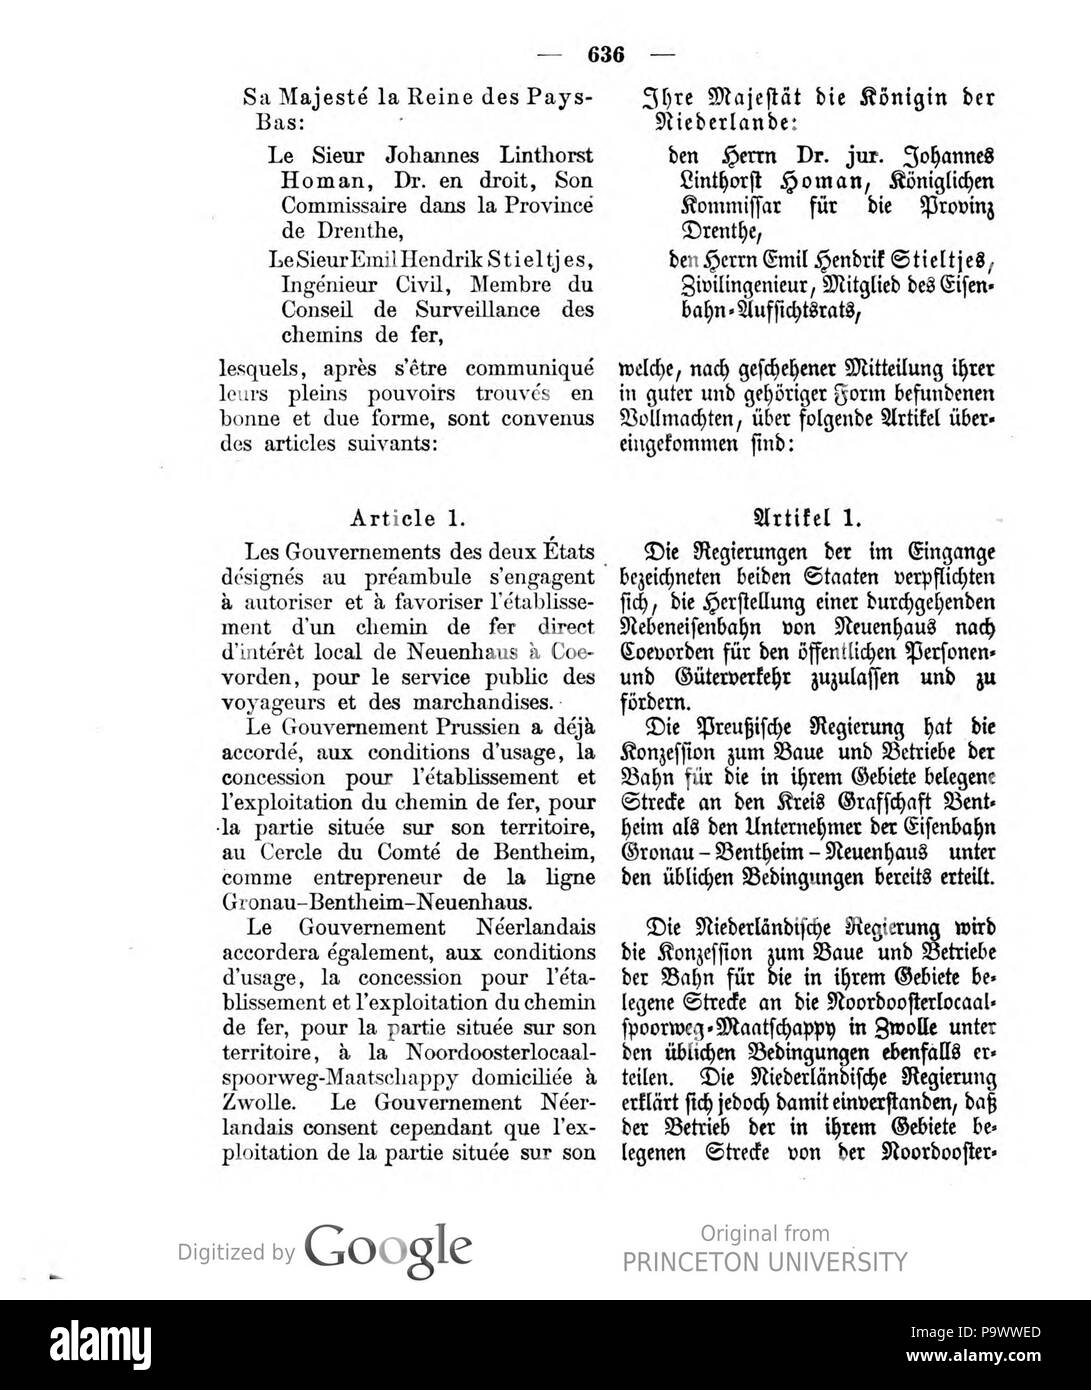 429 Deutsches Reichsgesetzblatt 1908 058 636 Stock Photo